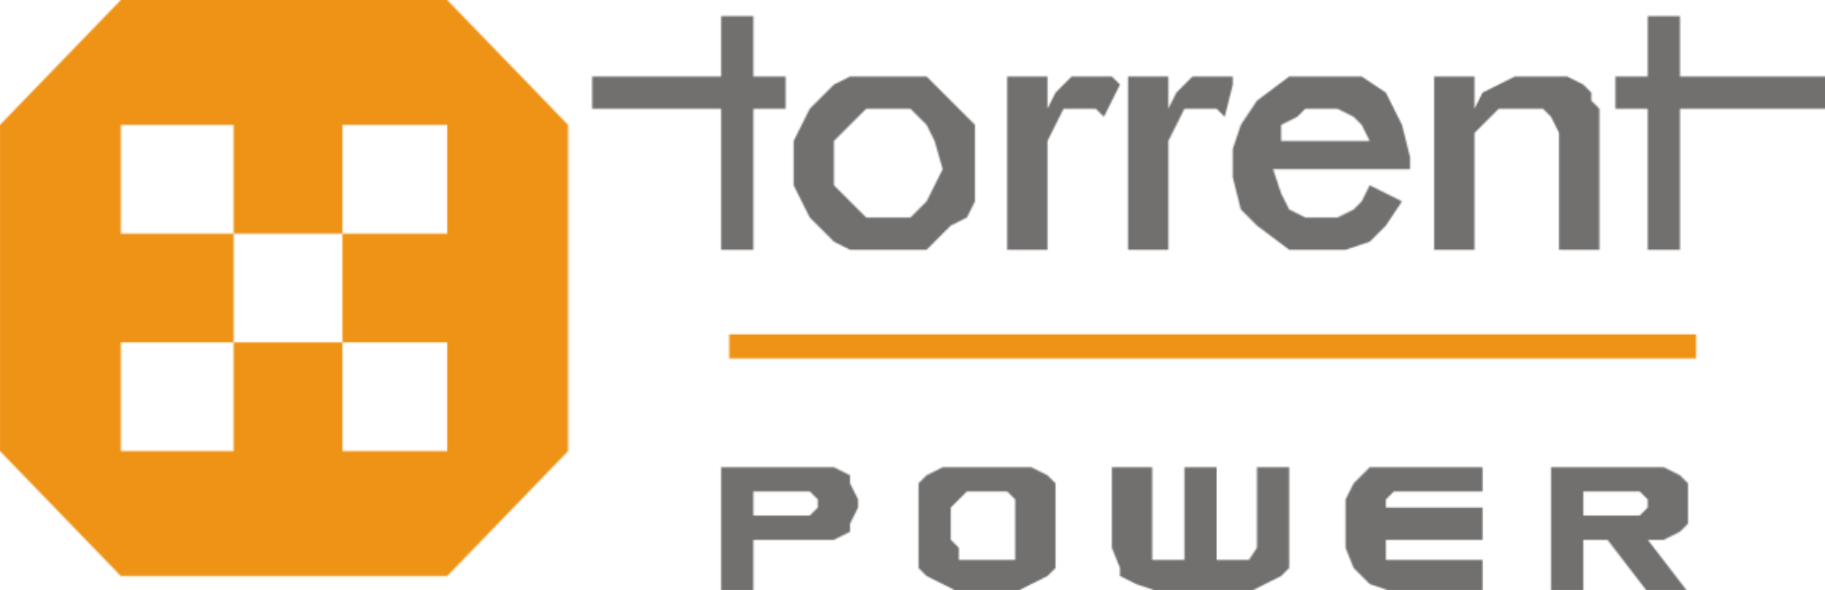 torrent power logo